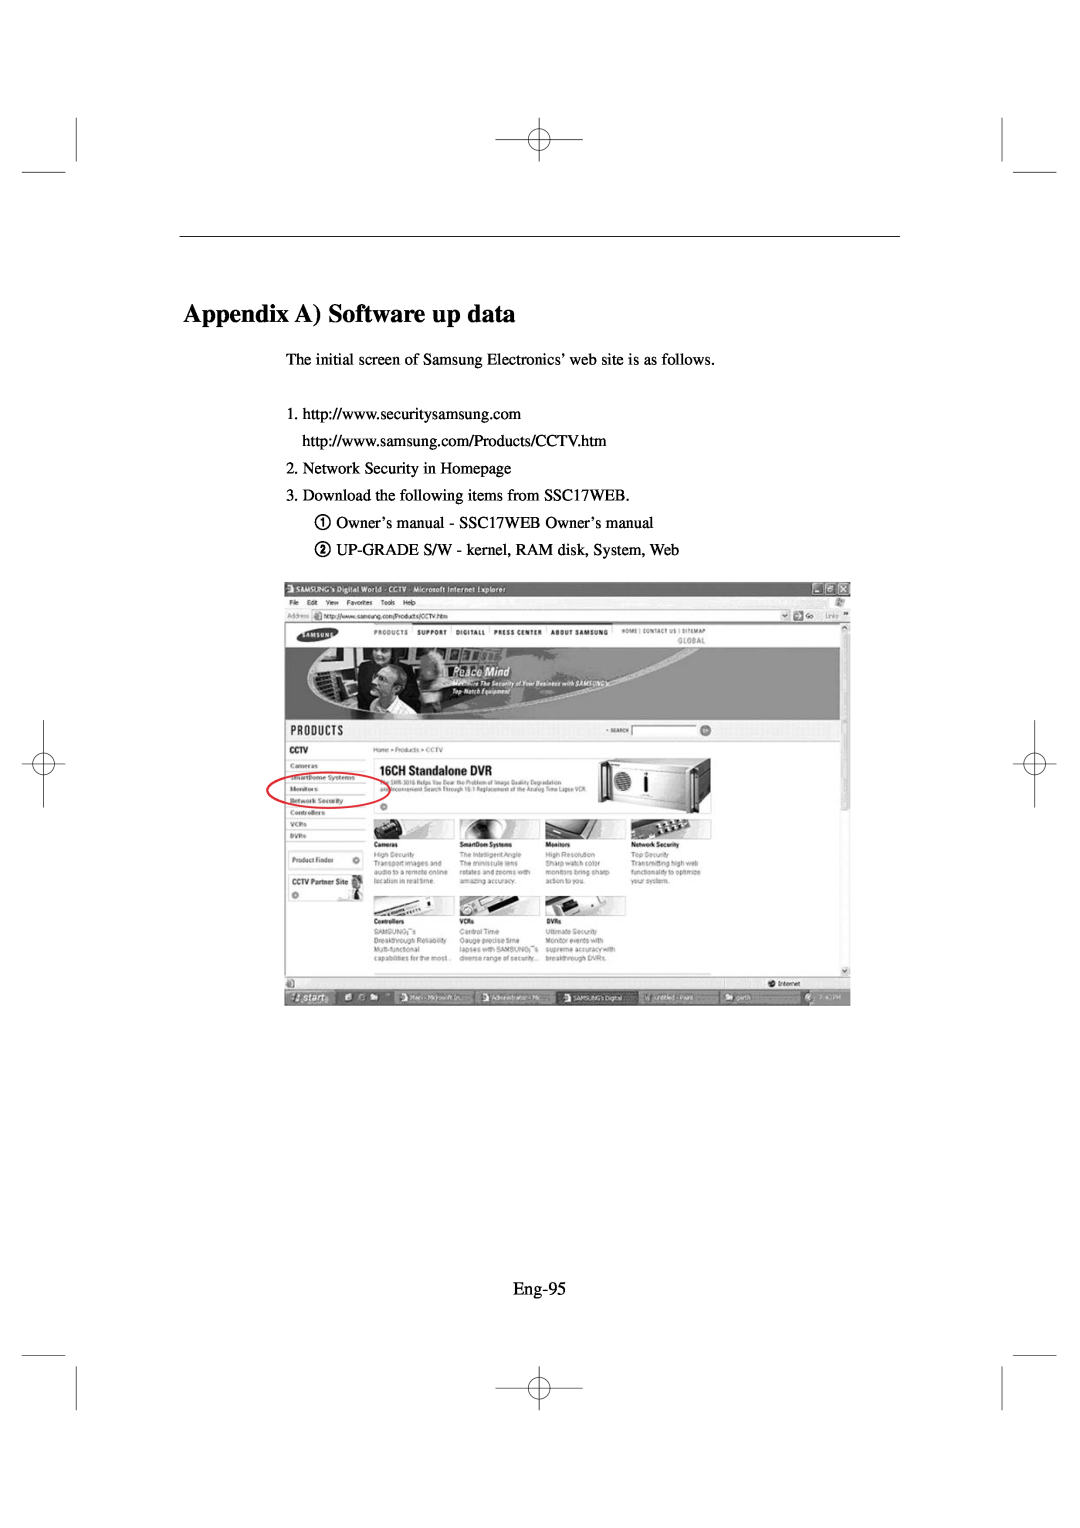 Samsung SSC17WEB manual Appendix A Software up data, Eng-95 